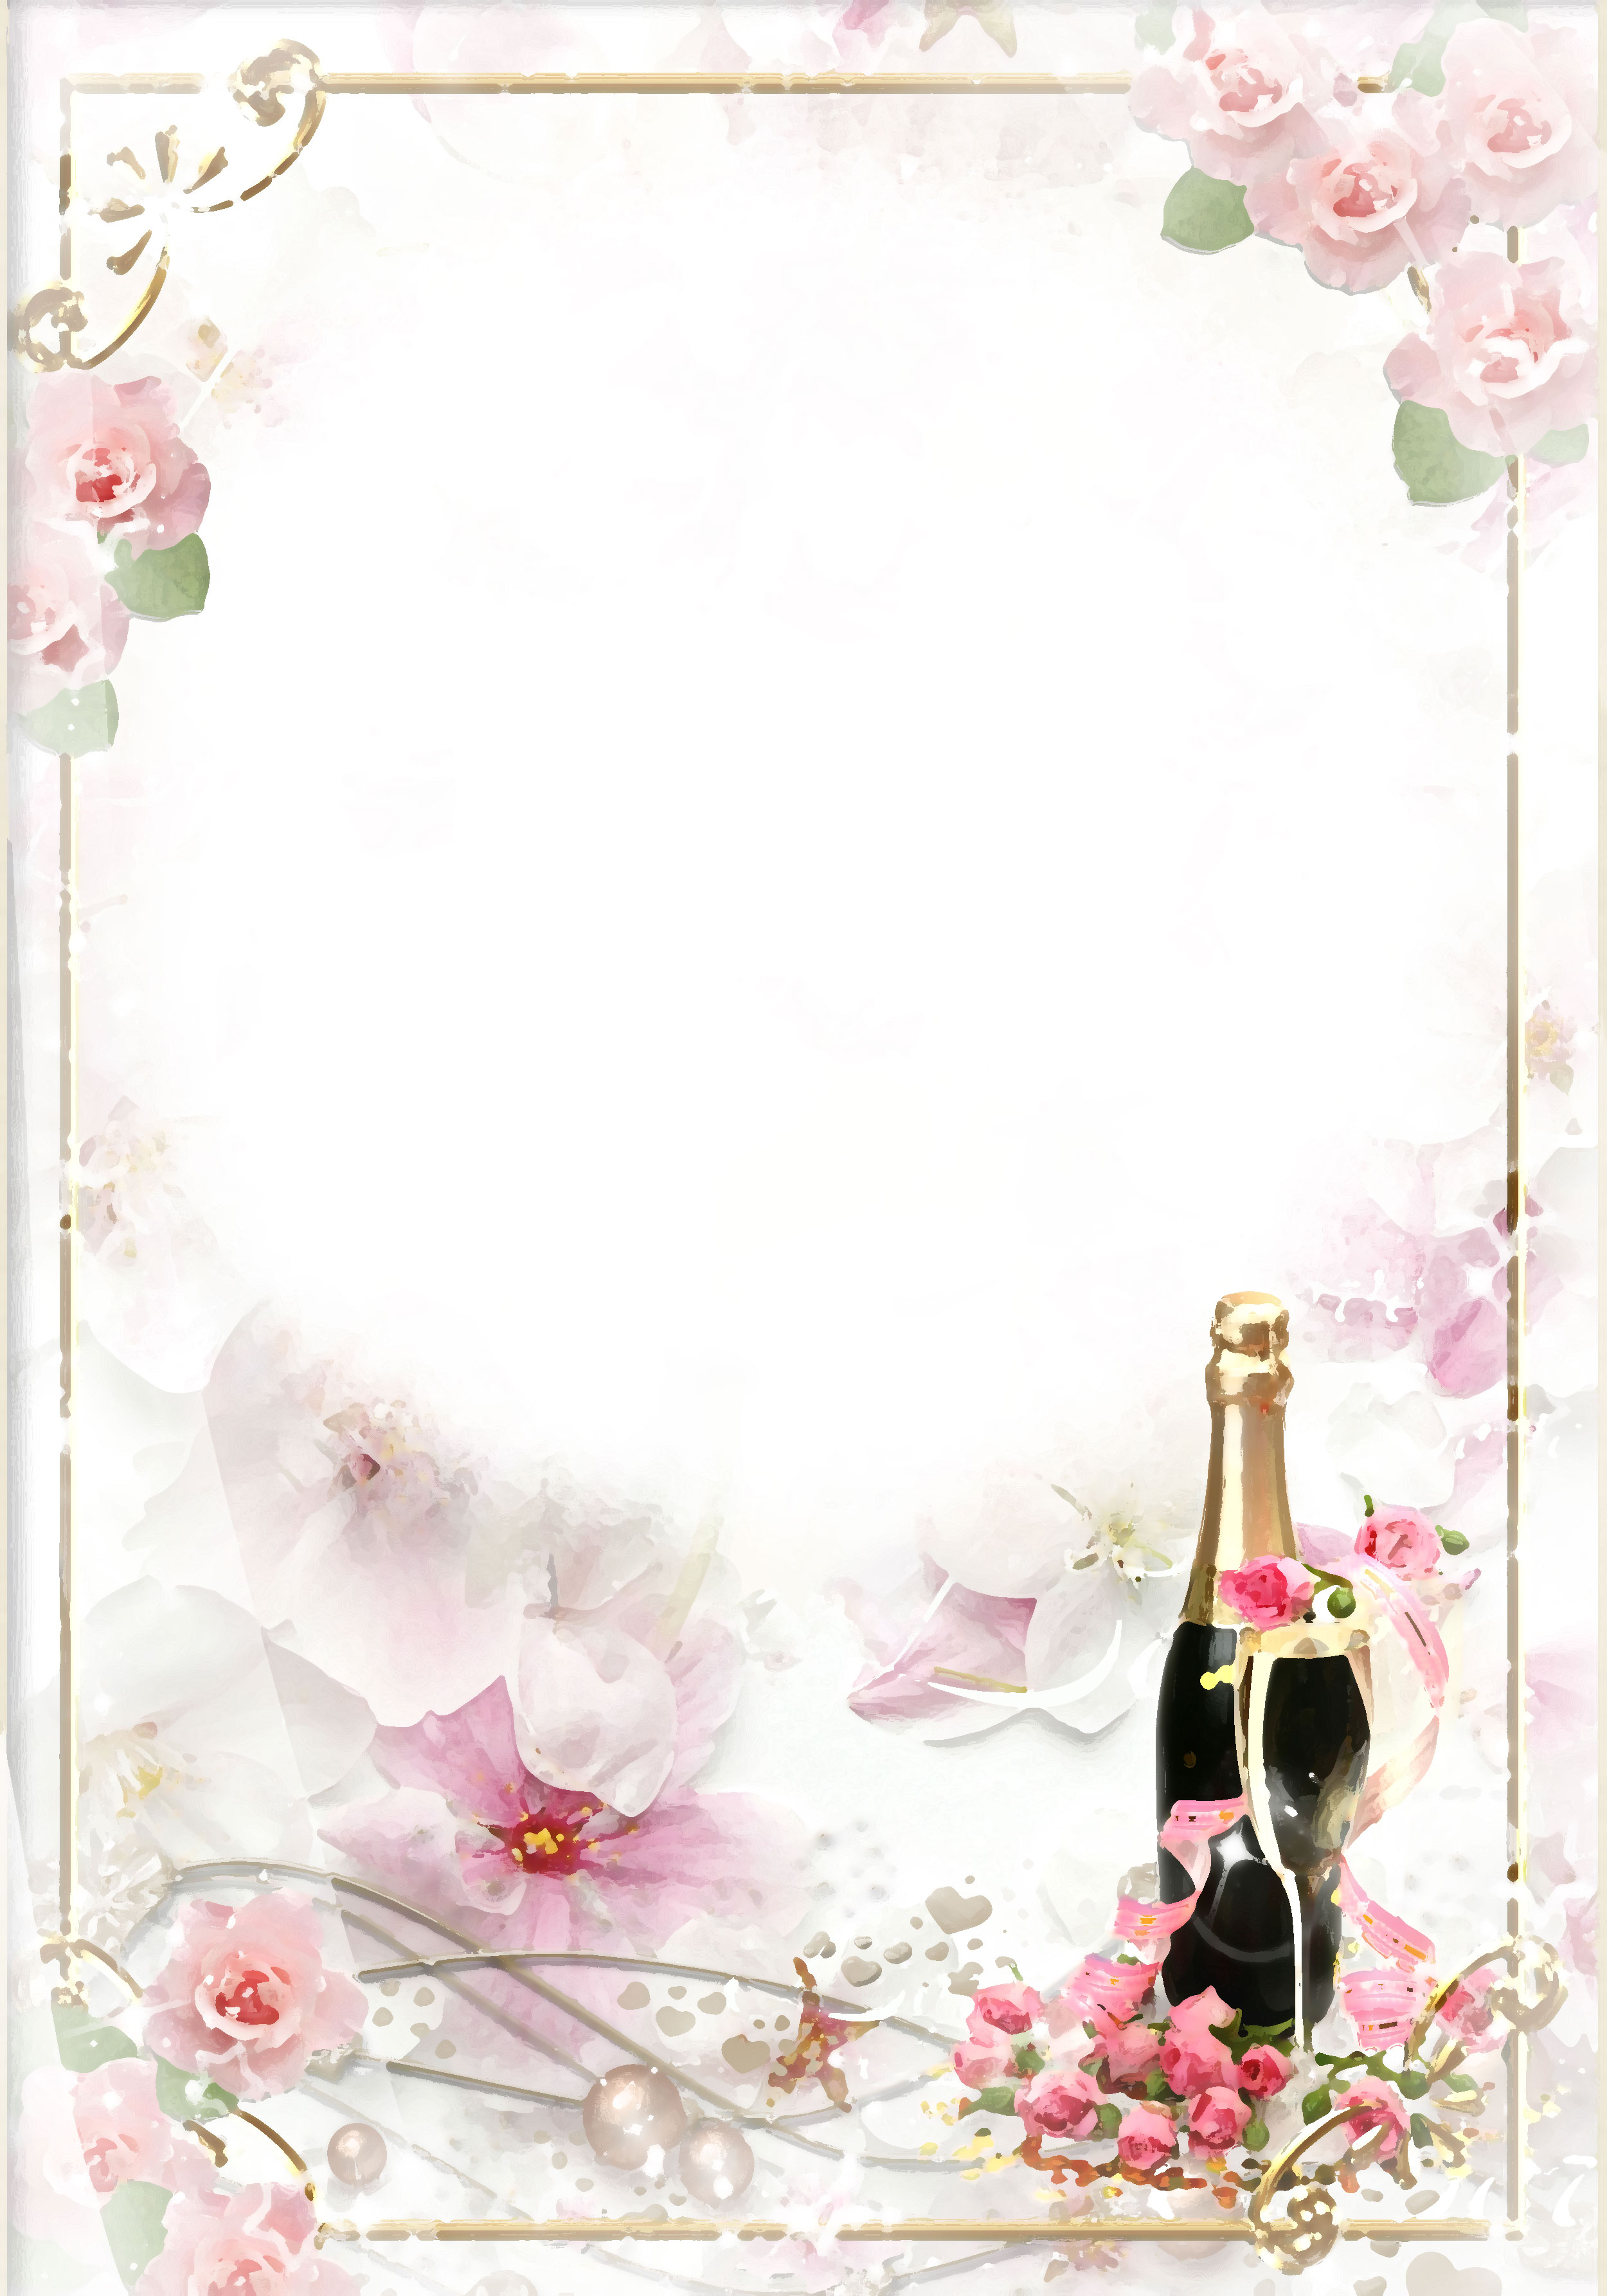 ピンクの花のイラスト フリー素材 壁紙 背景no 581 赤いバラとワインボトル